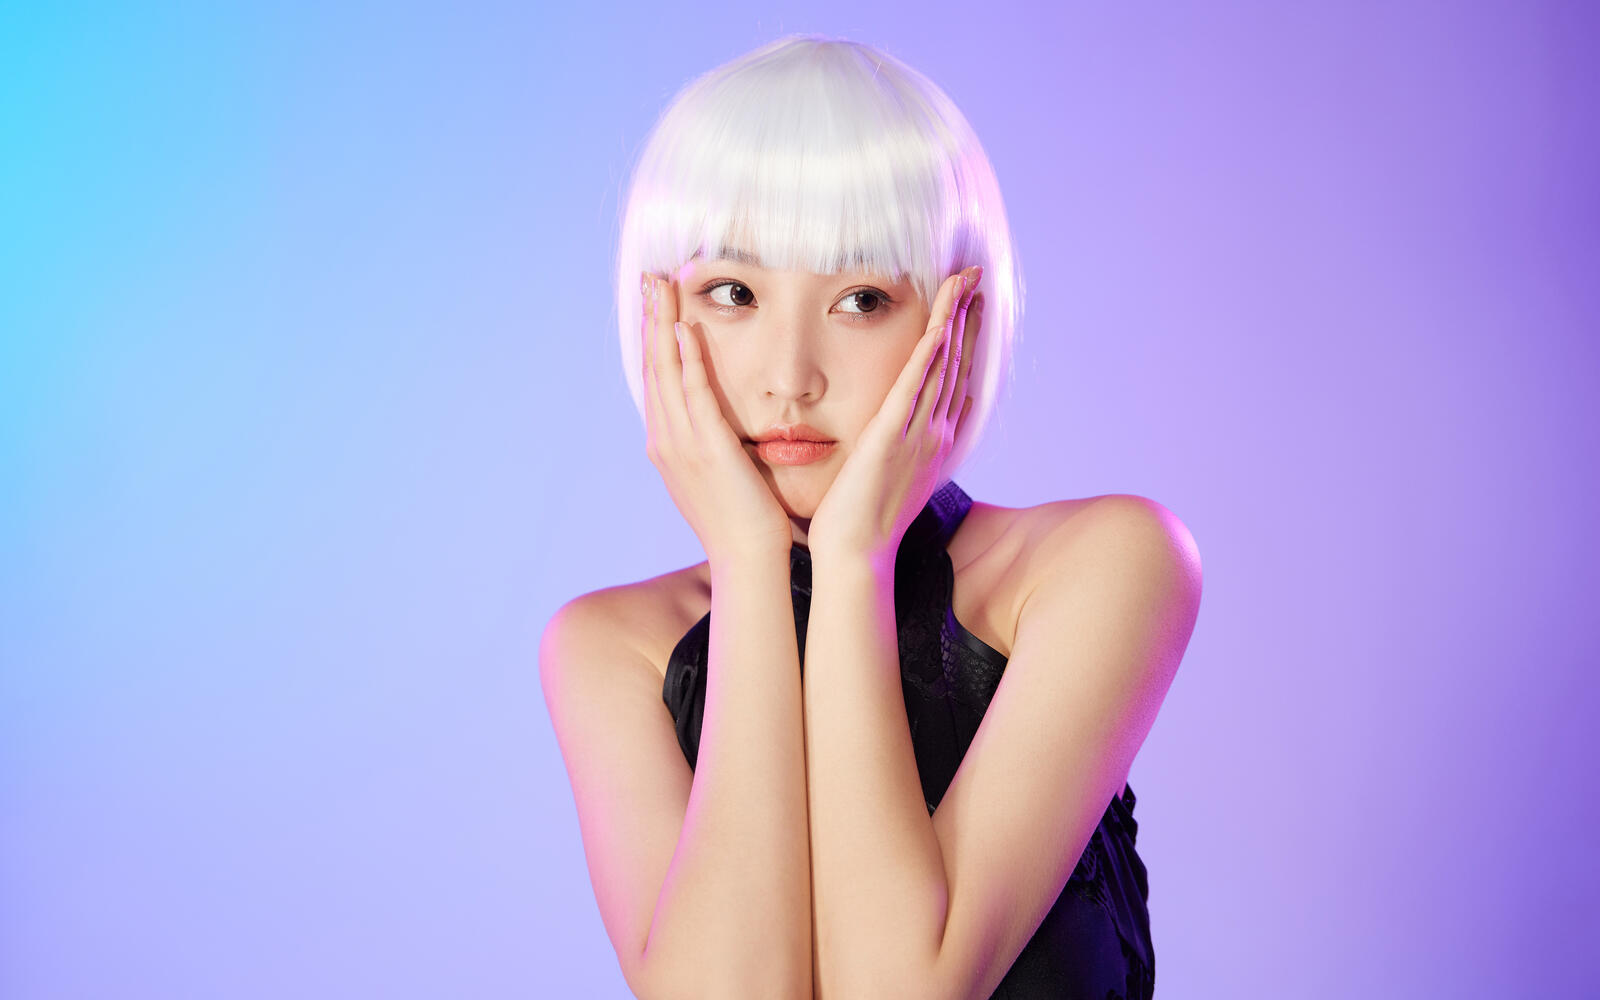 Бесплатное фото Азиатская девушка с короткой стрижкой и белыми волосами